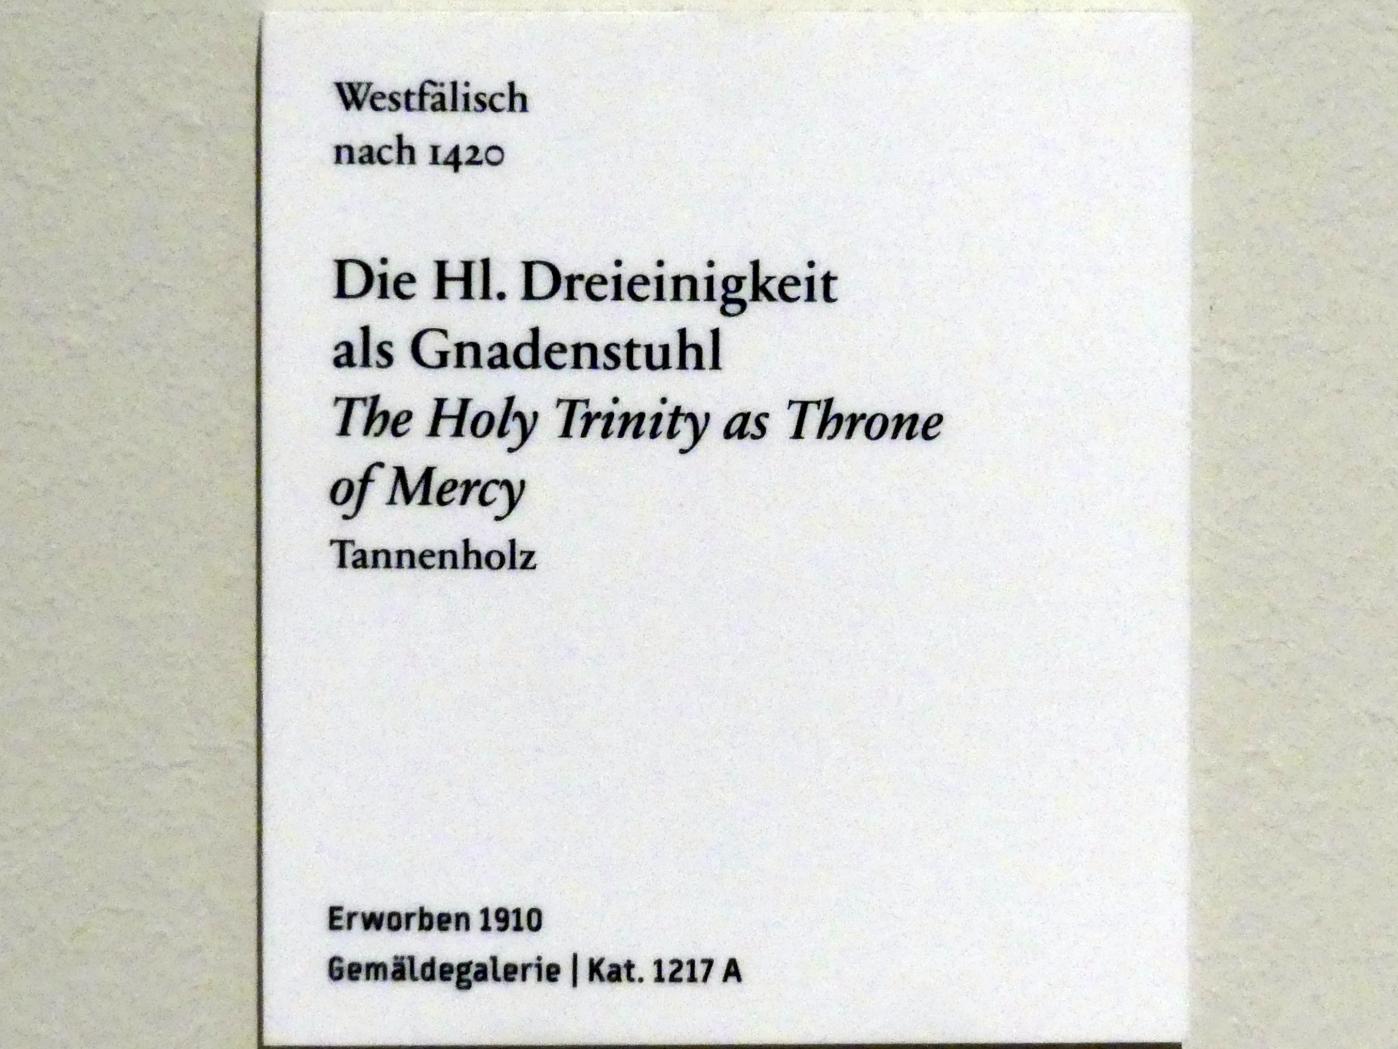 Die Hl. Dreieinigkeit als Gnadenstuhl, nach 1420, Bild 2/2